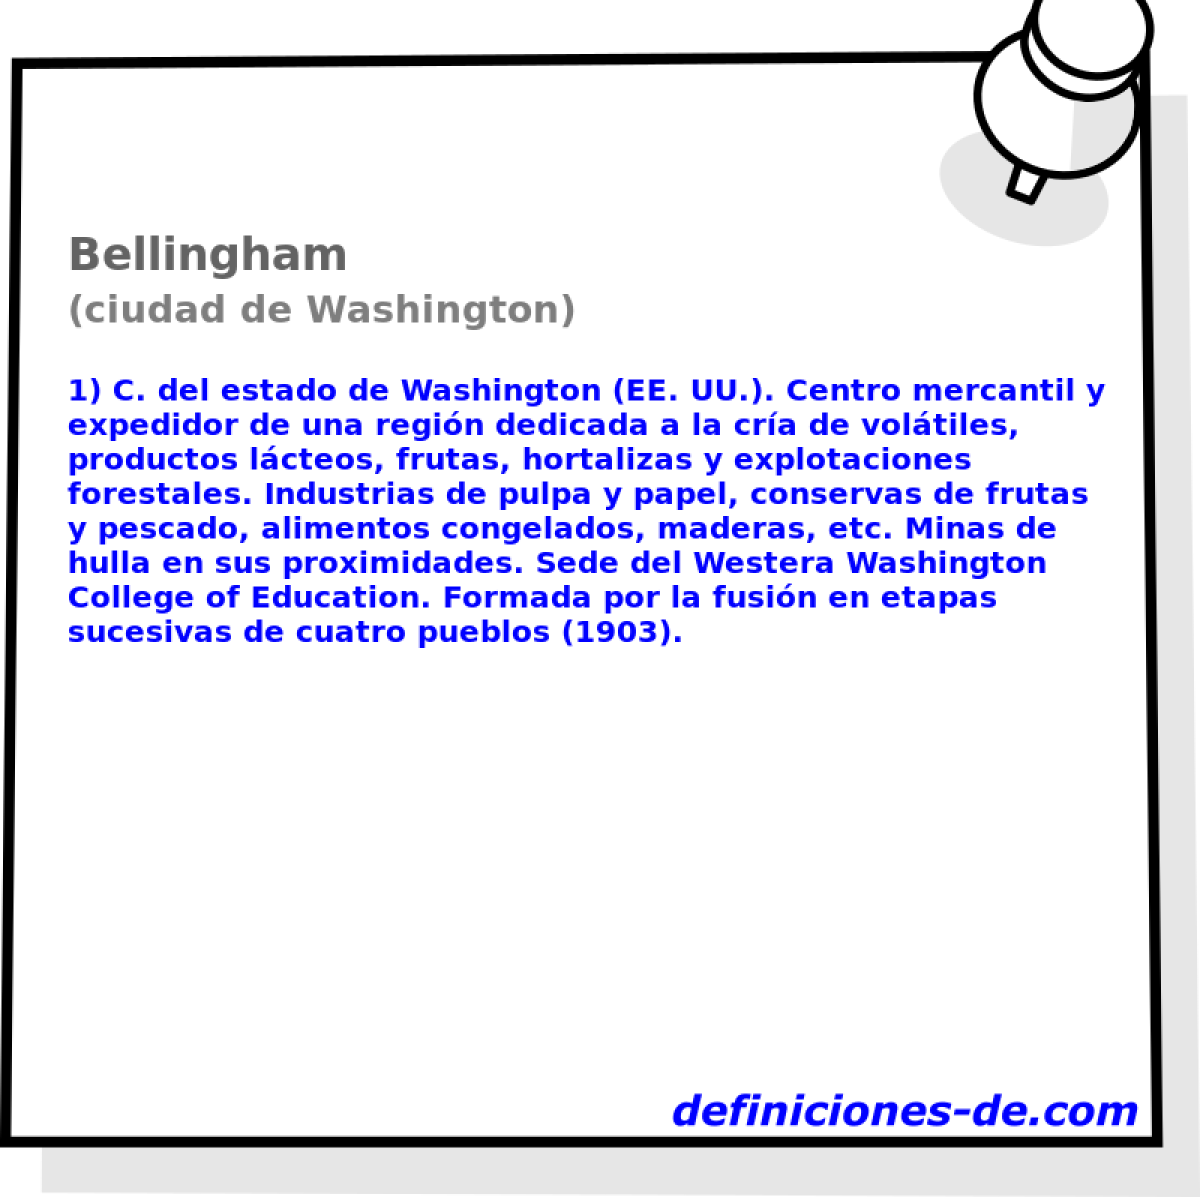 Bellingham (ciudad de Washington)